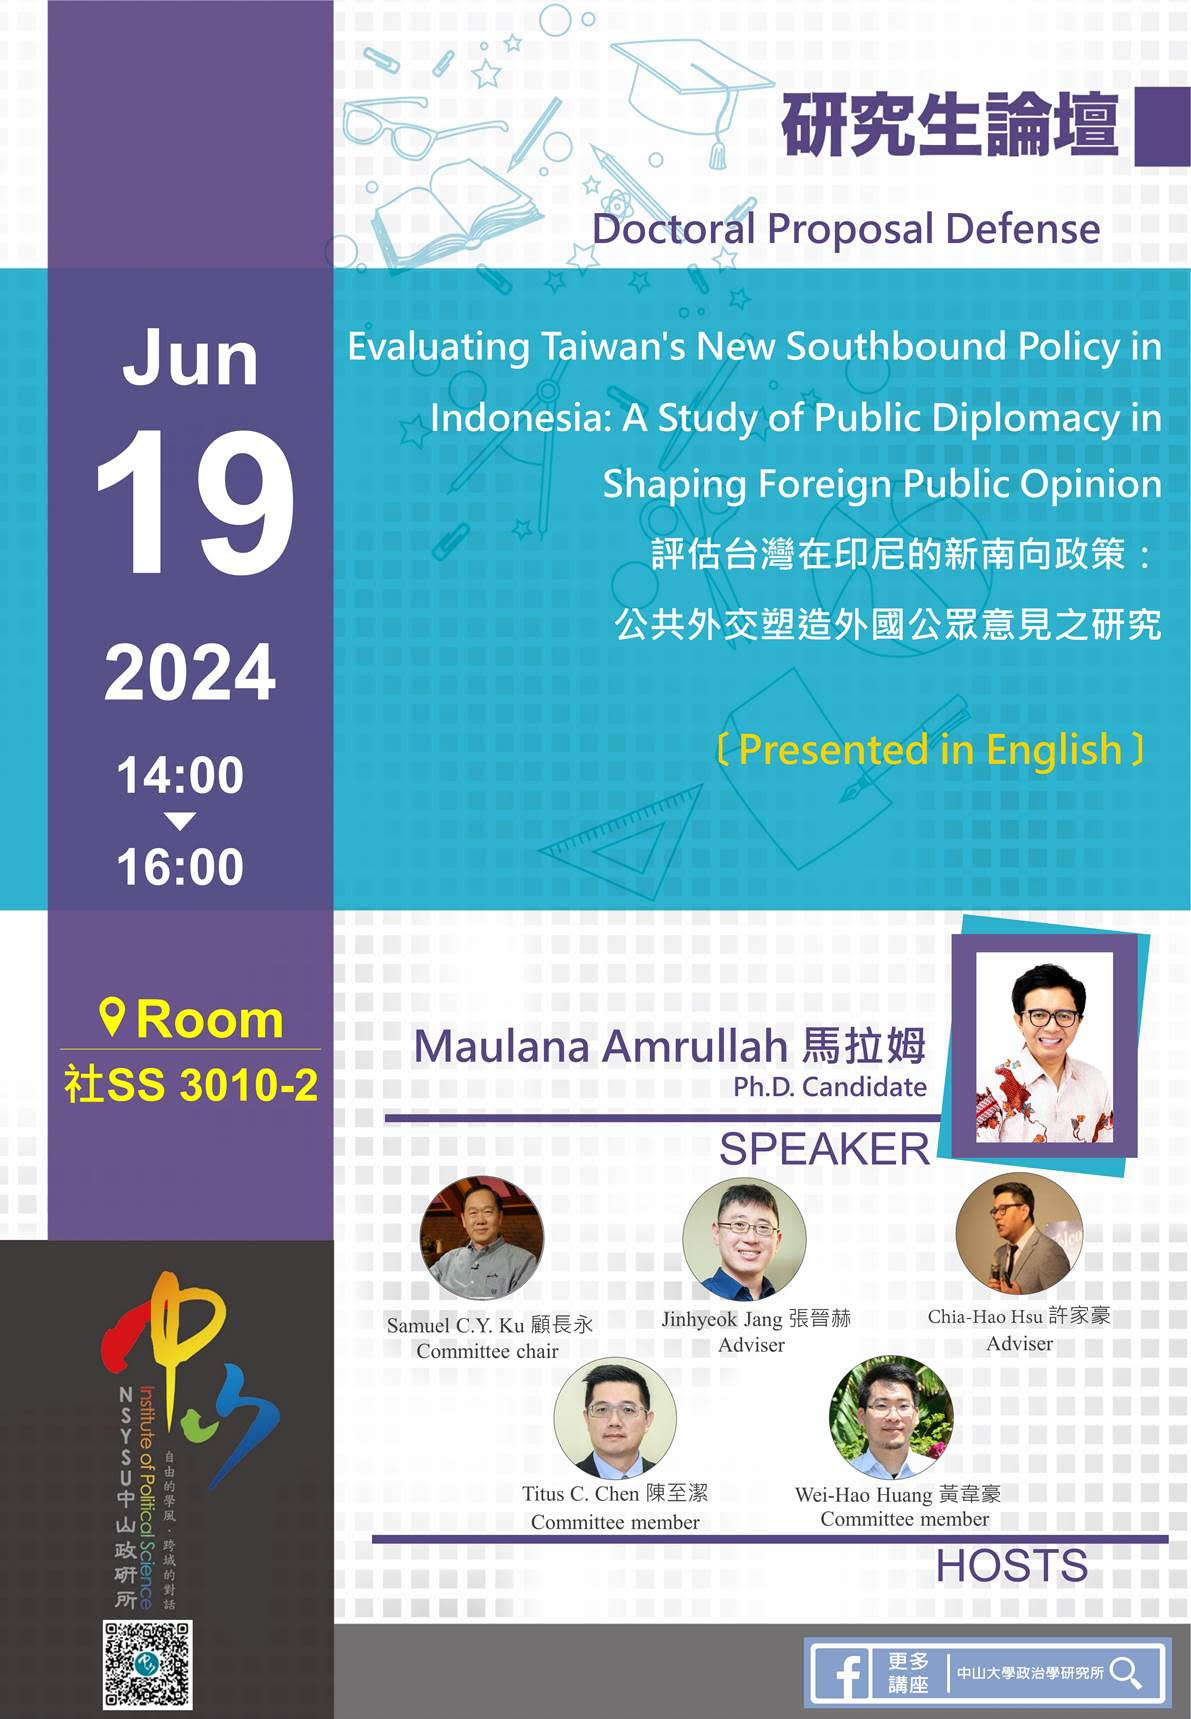 【研究生論壇】Maulana Amrullah: 評估台灣在印尼的新南向政策：公共外交塑造外國公眾意見之研究